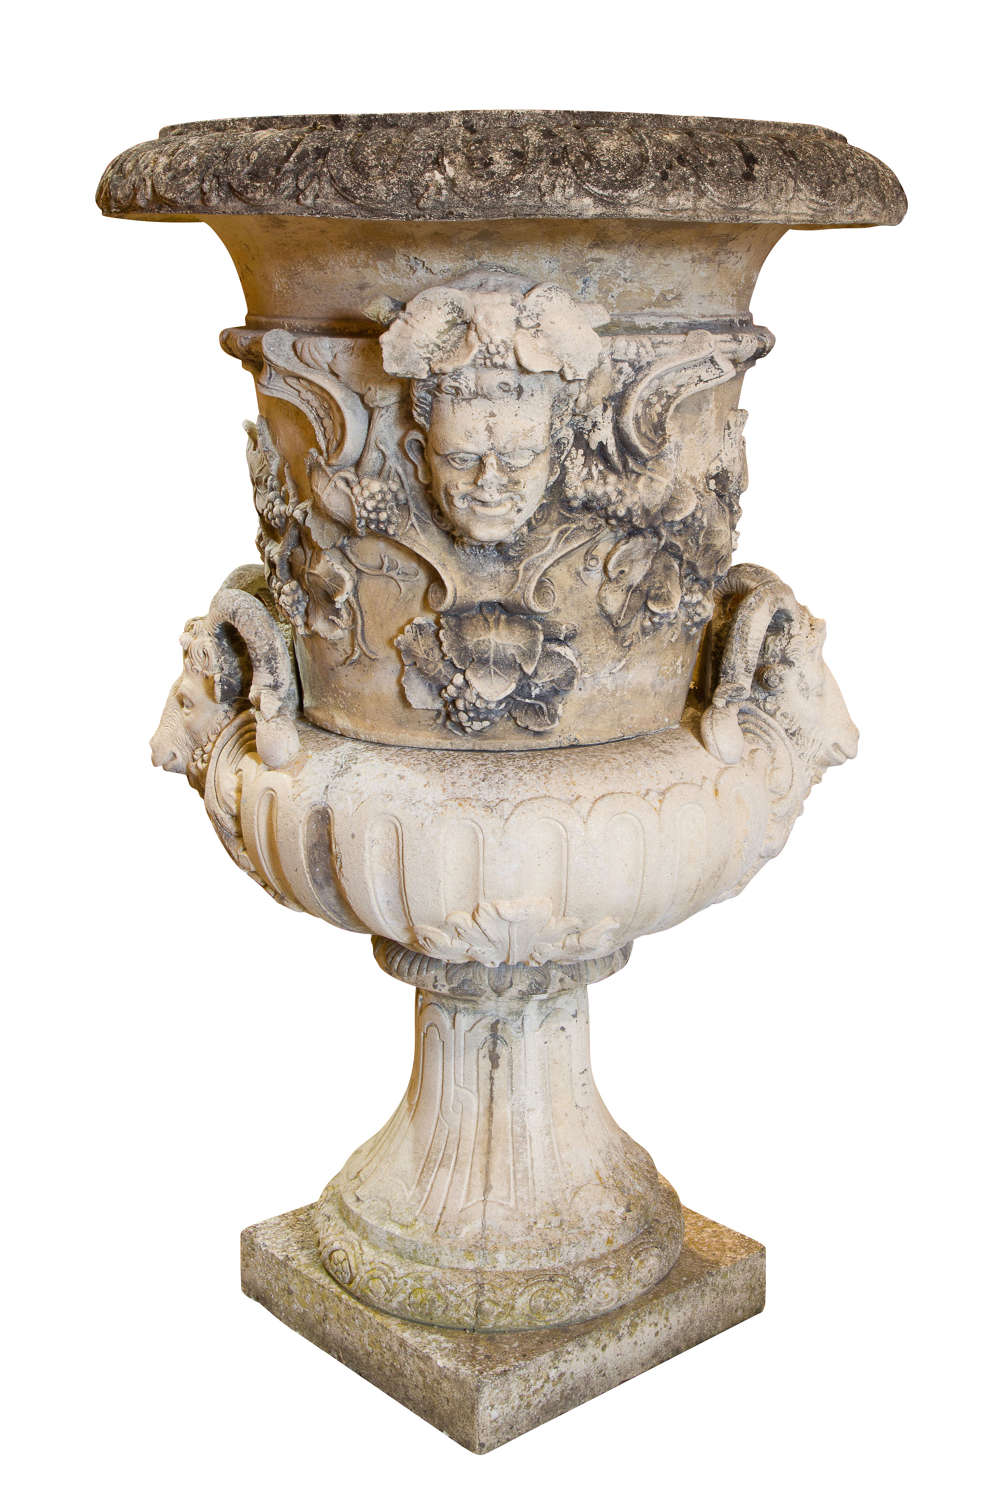 Imposing stone urn